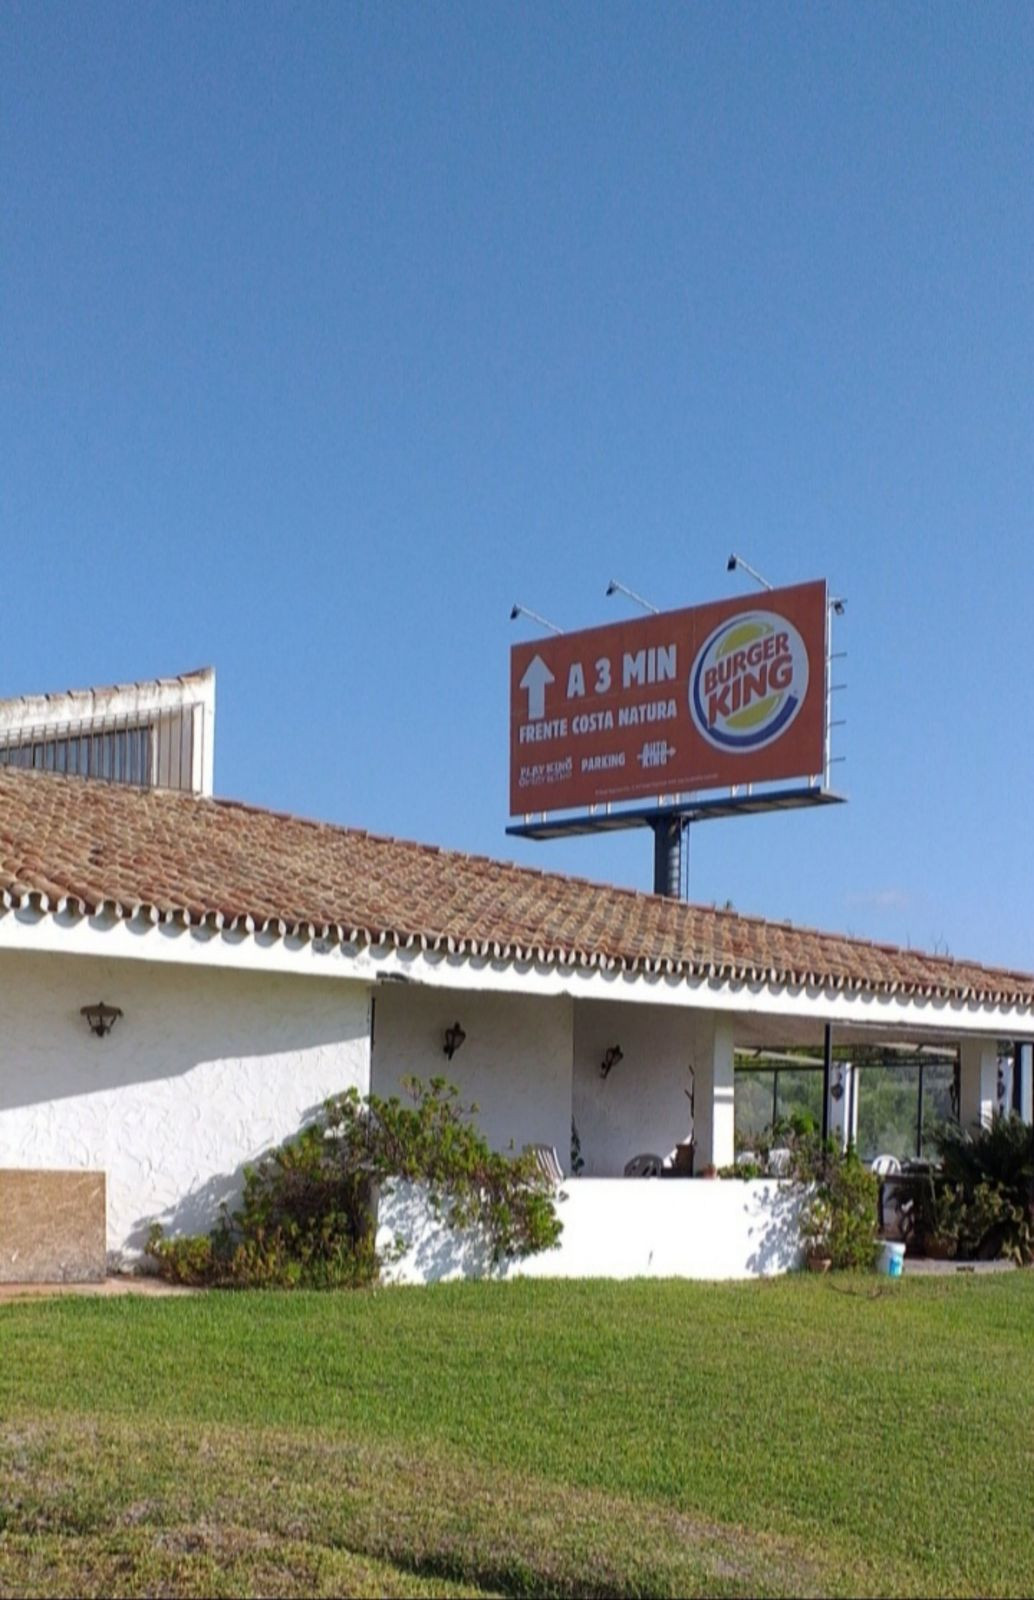 Commercial Hotel in Estepona, Costa del Sol
